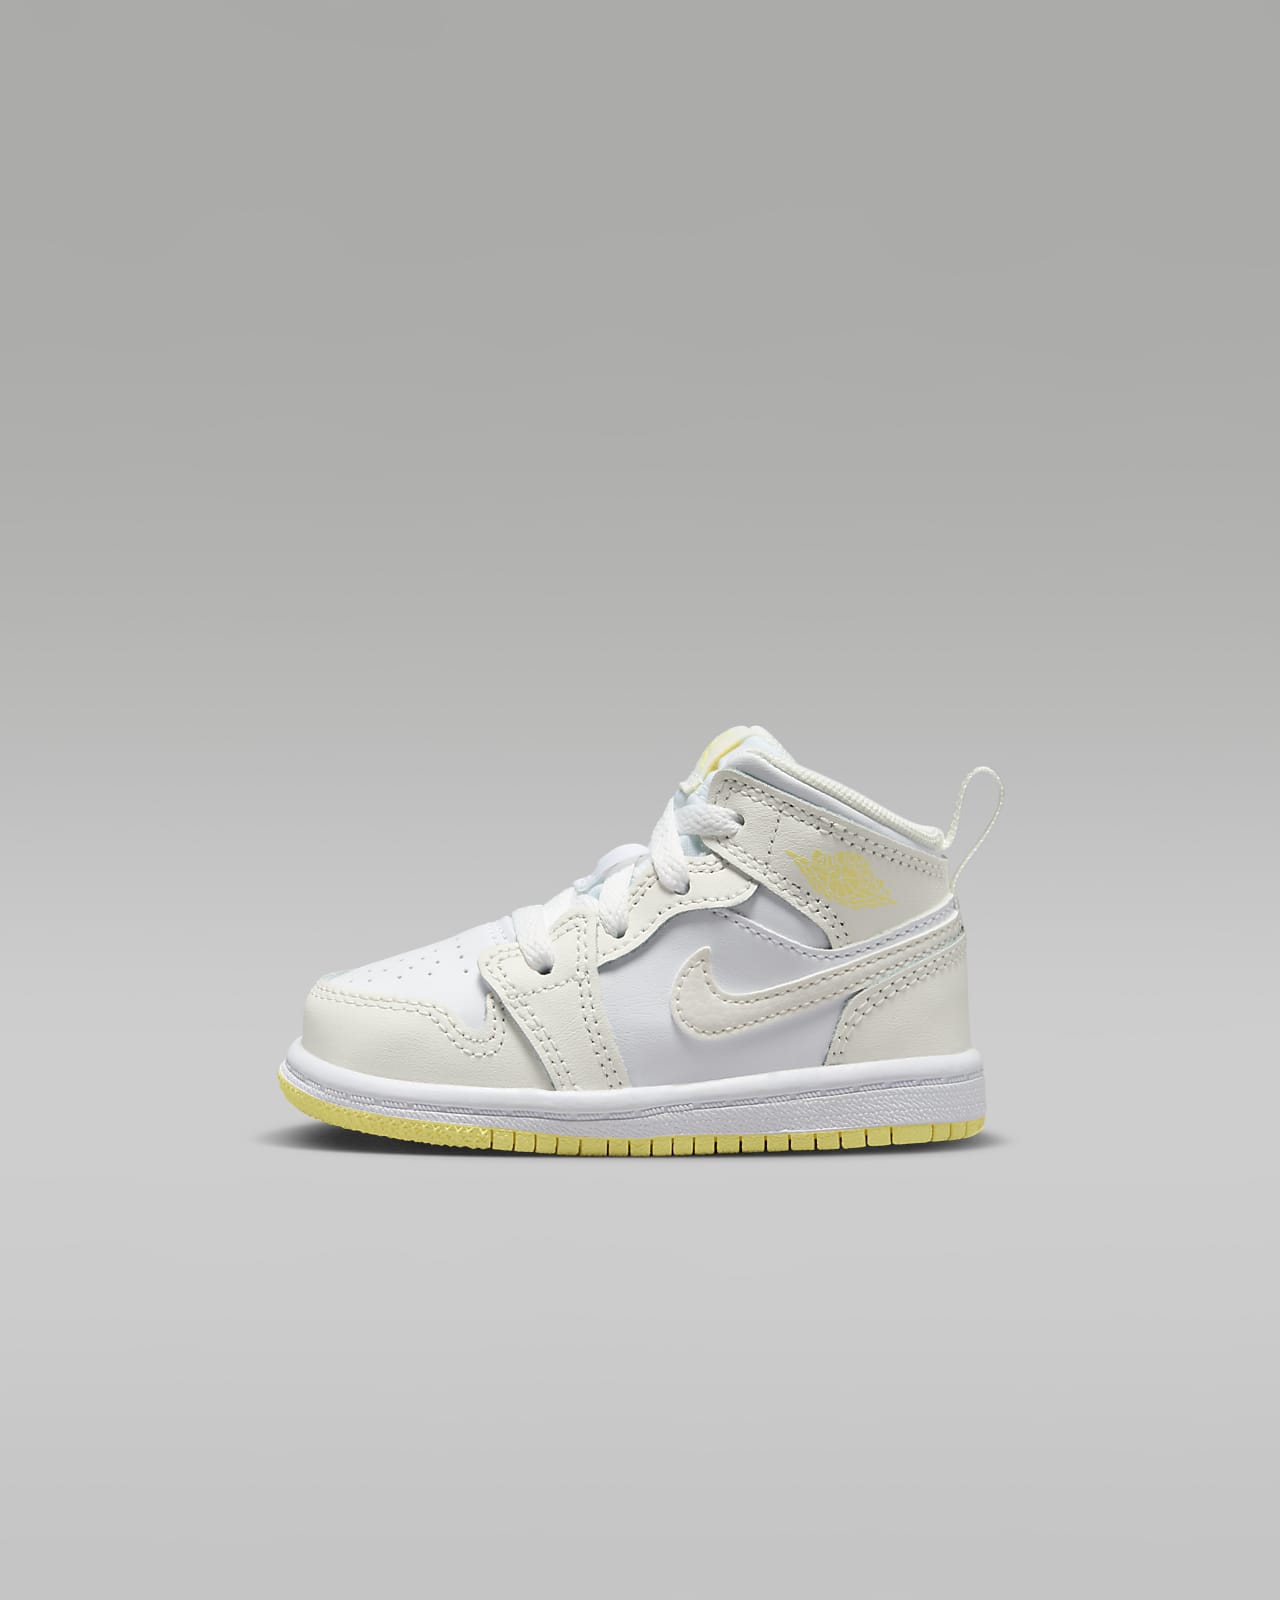 Jordan 1 Mid Schuh für Babys und Kleinkinder